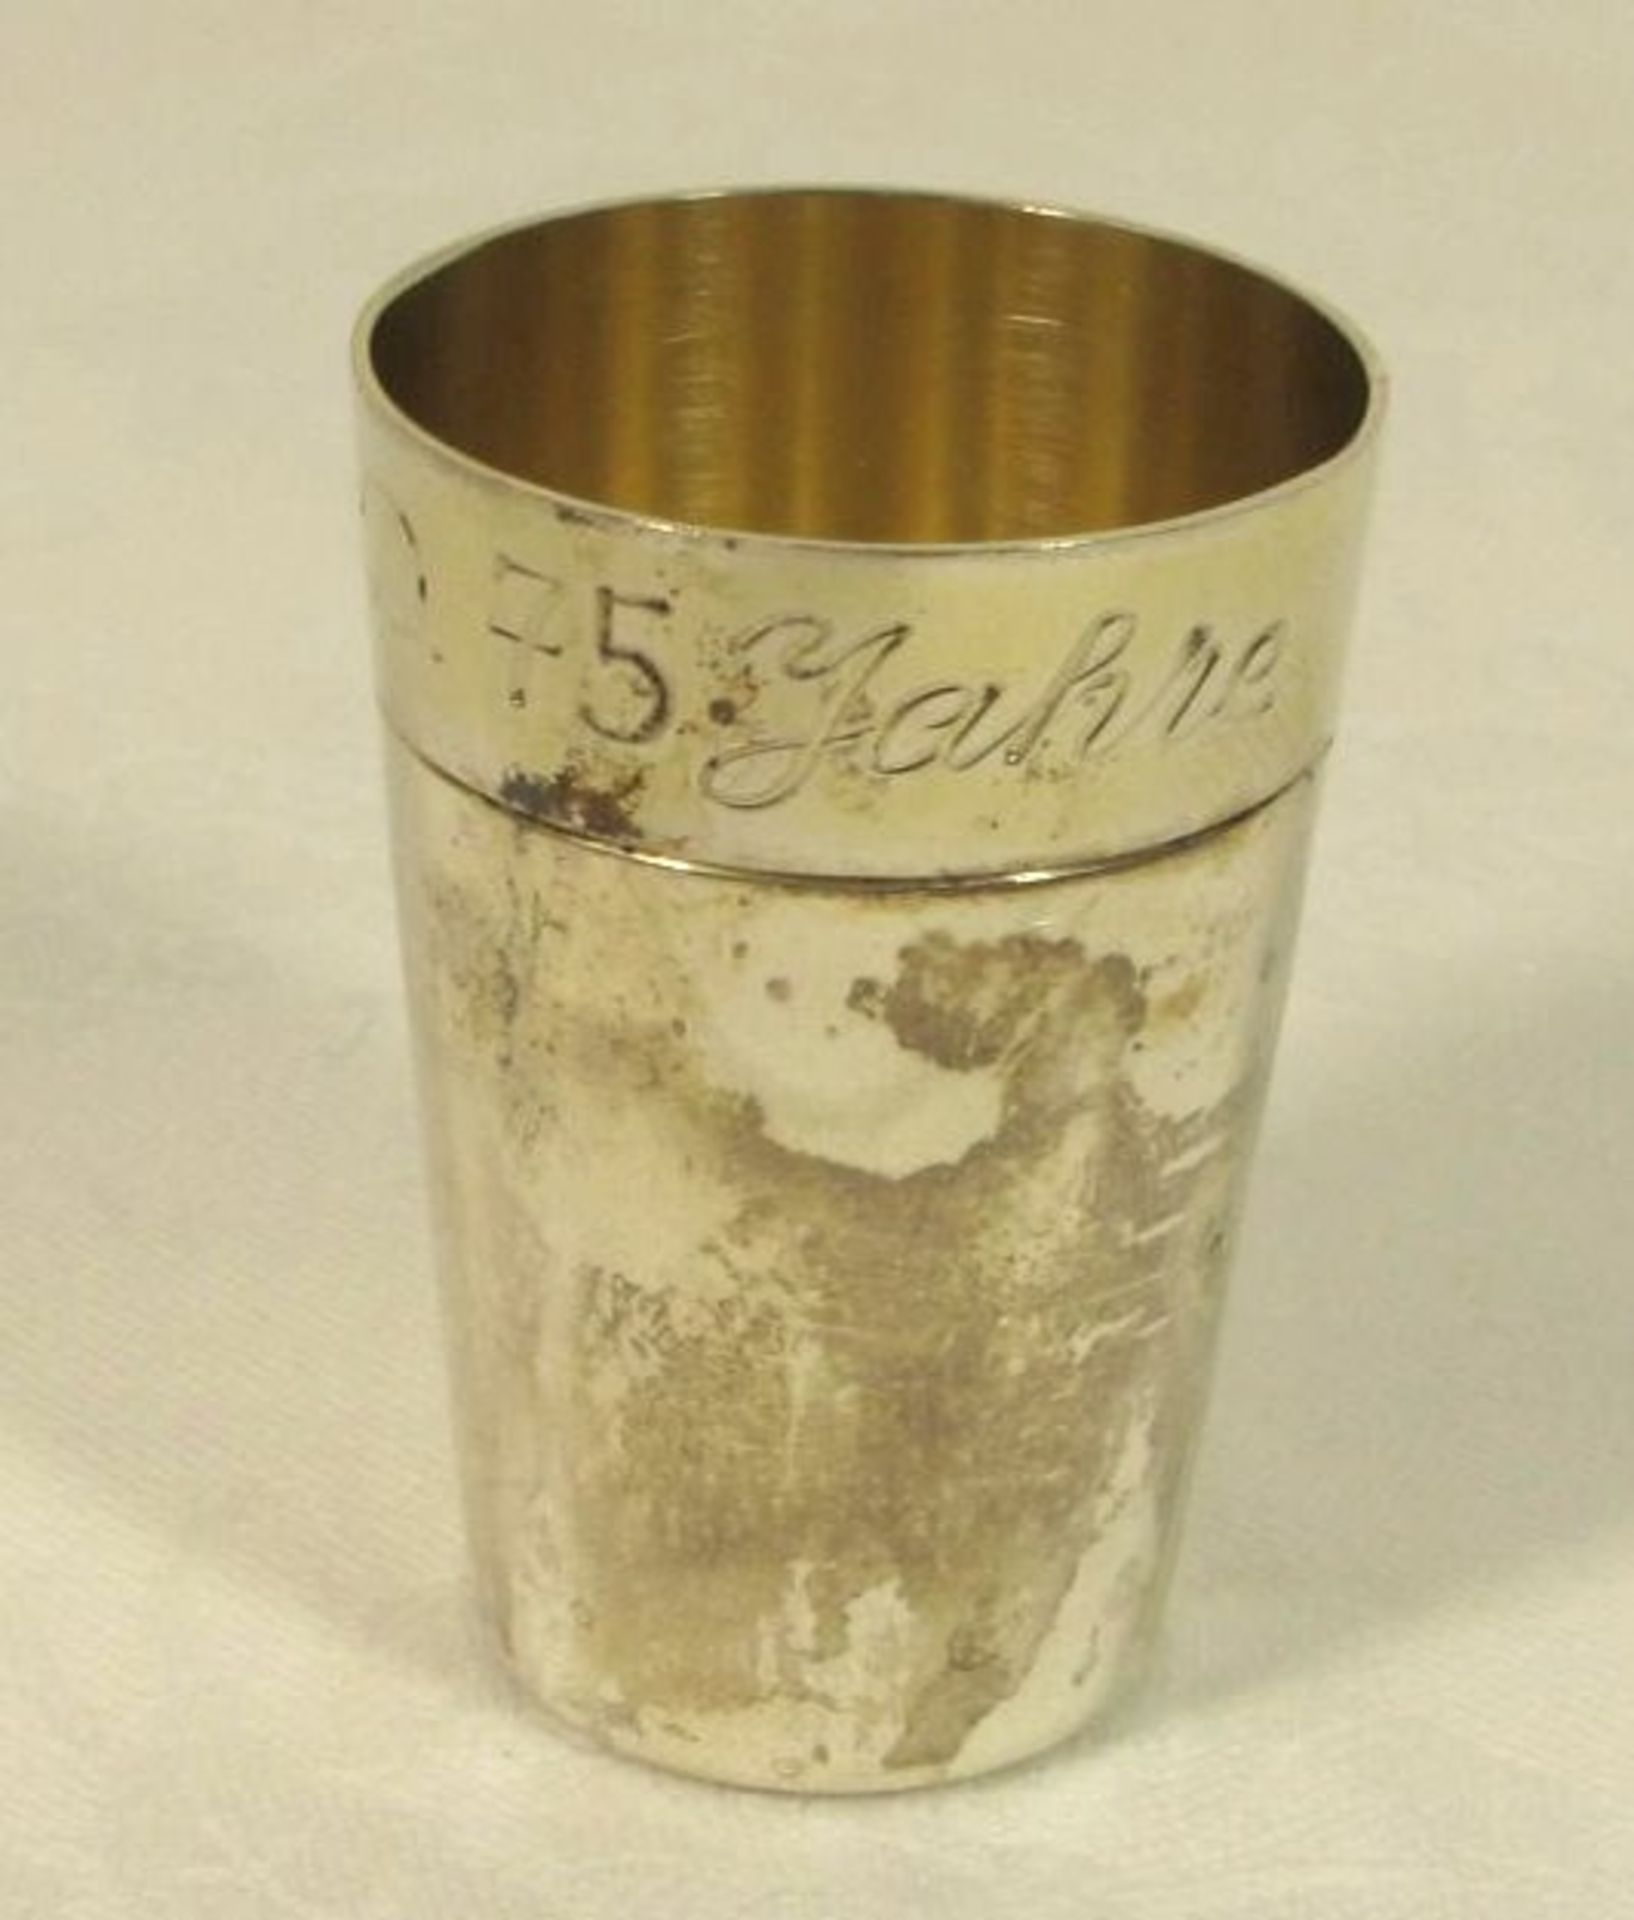 kl. Becher, 925er Silber, graviert u. datiert 1981, 21,4g, H-4,5cm .